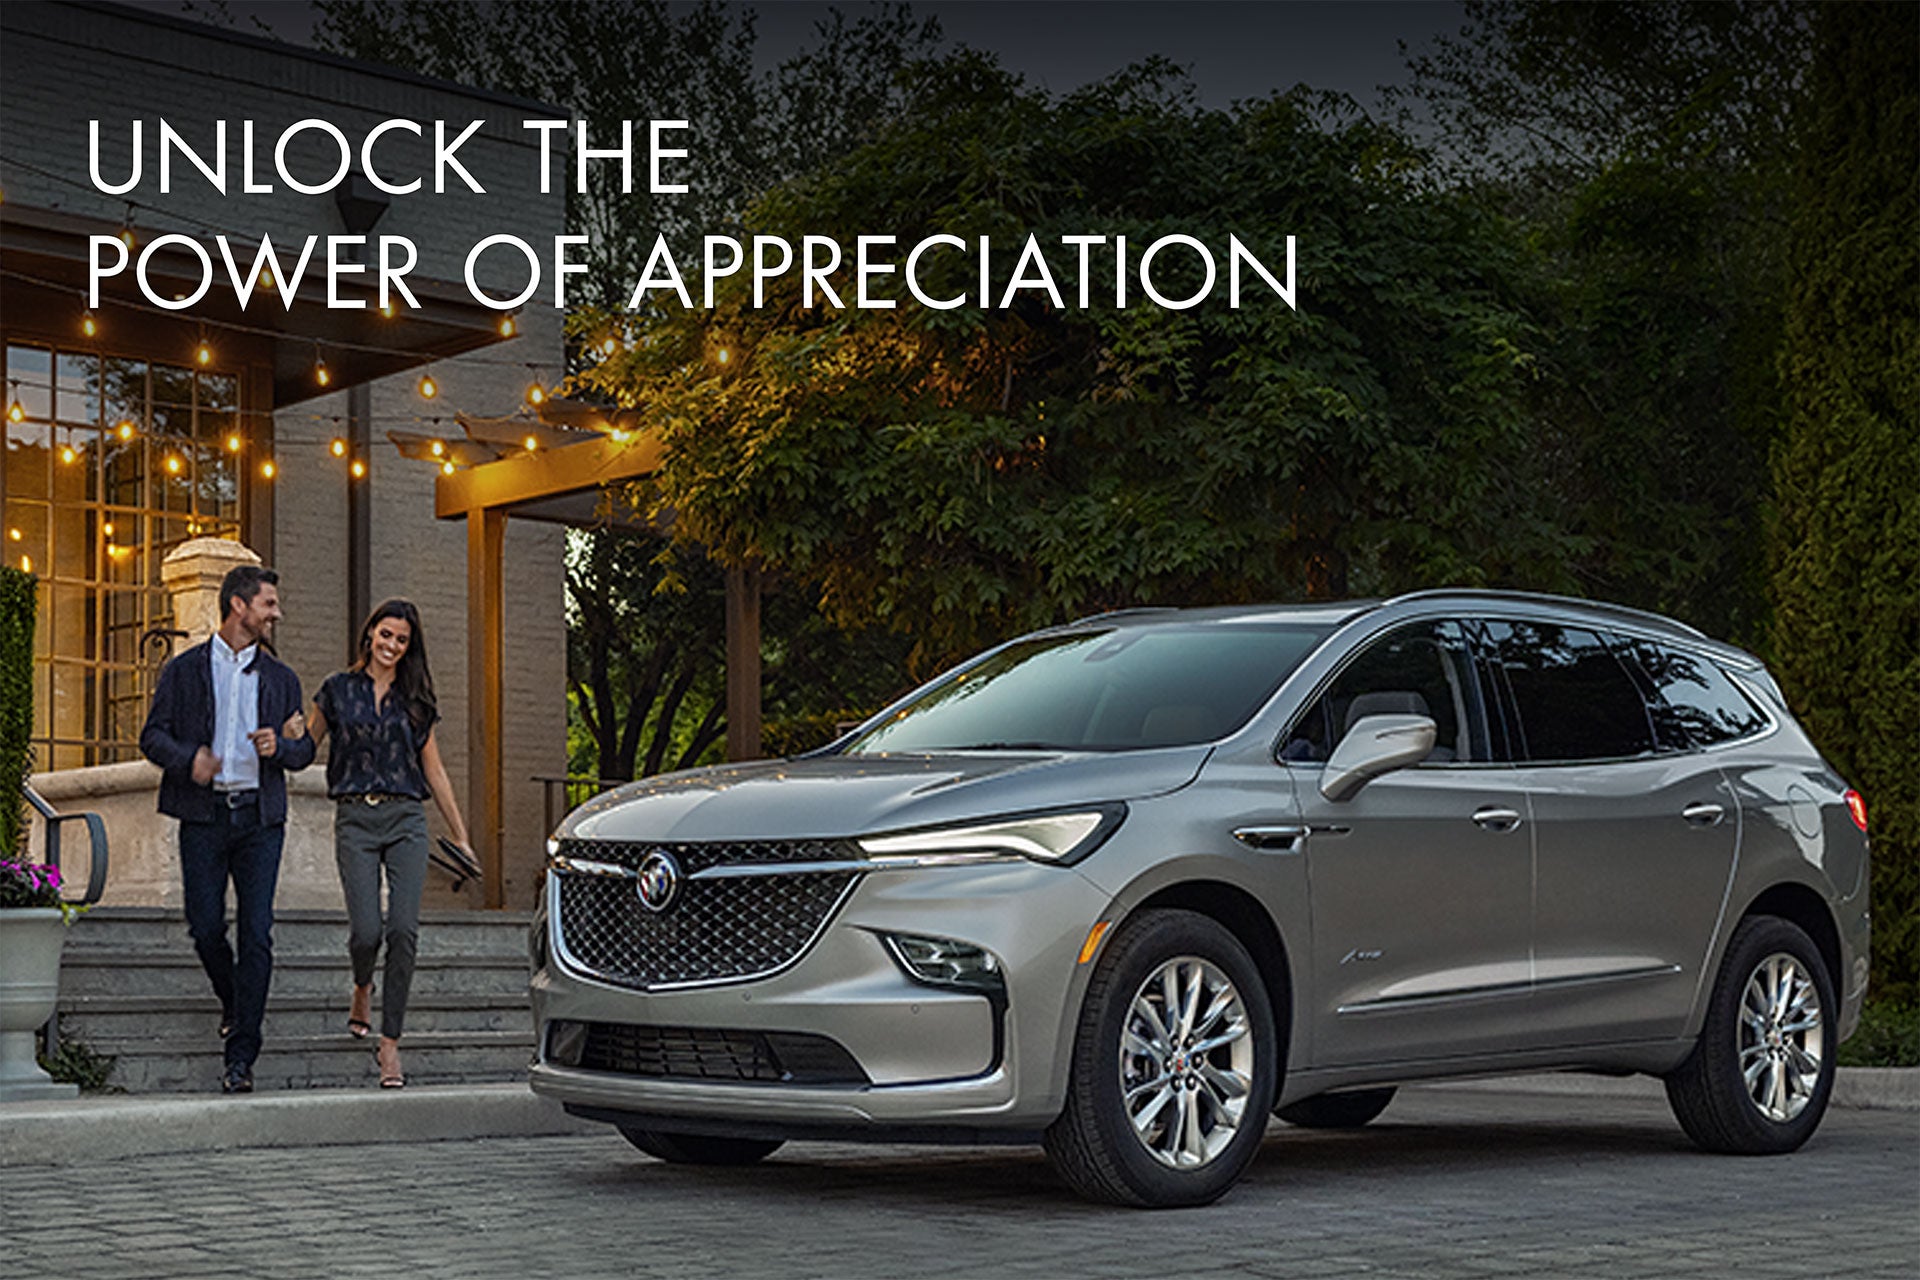 Unlock the power of appreciation | Vance Chevrolet Buick GMC of Miami in MIami OK